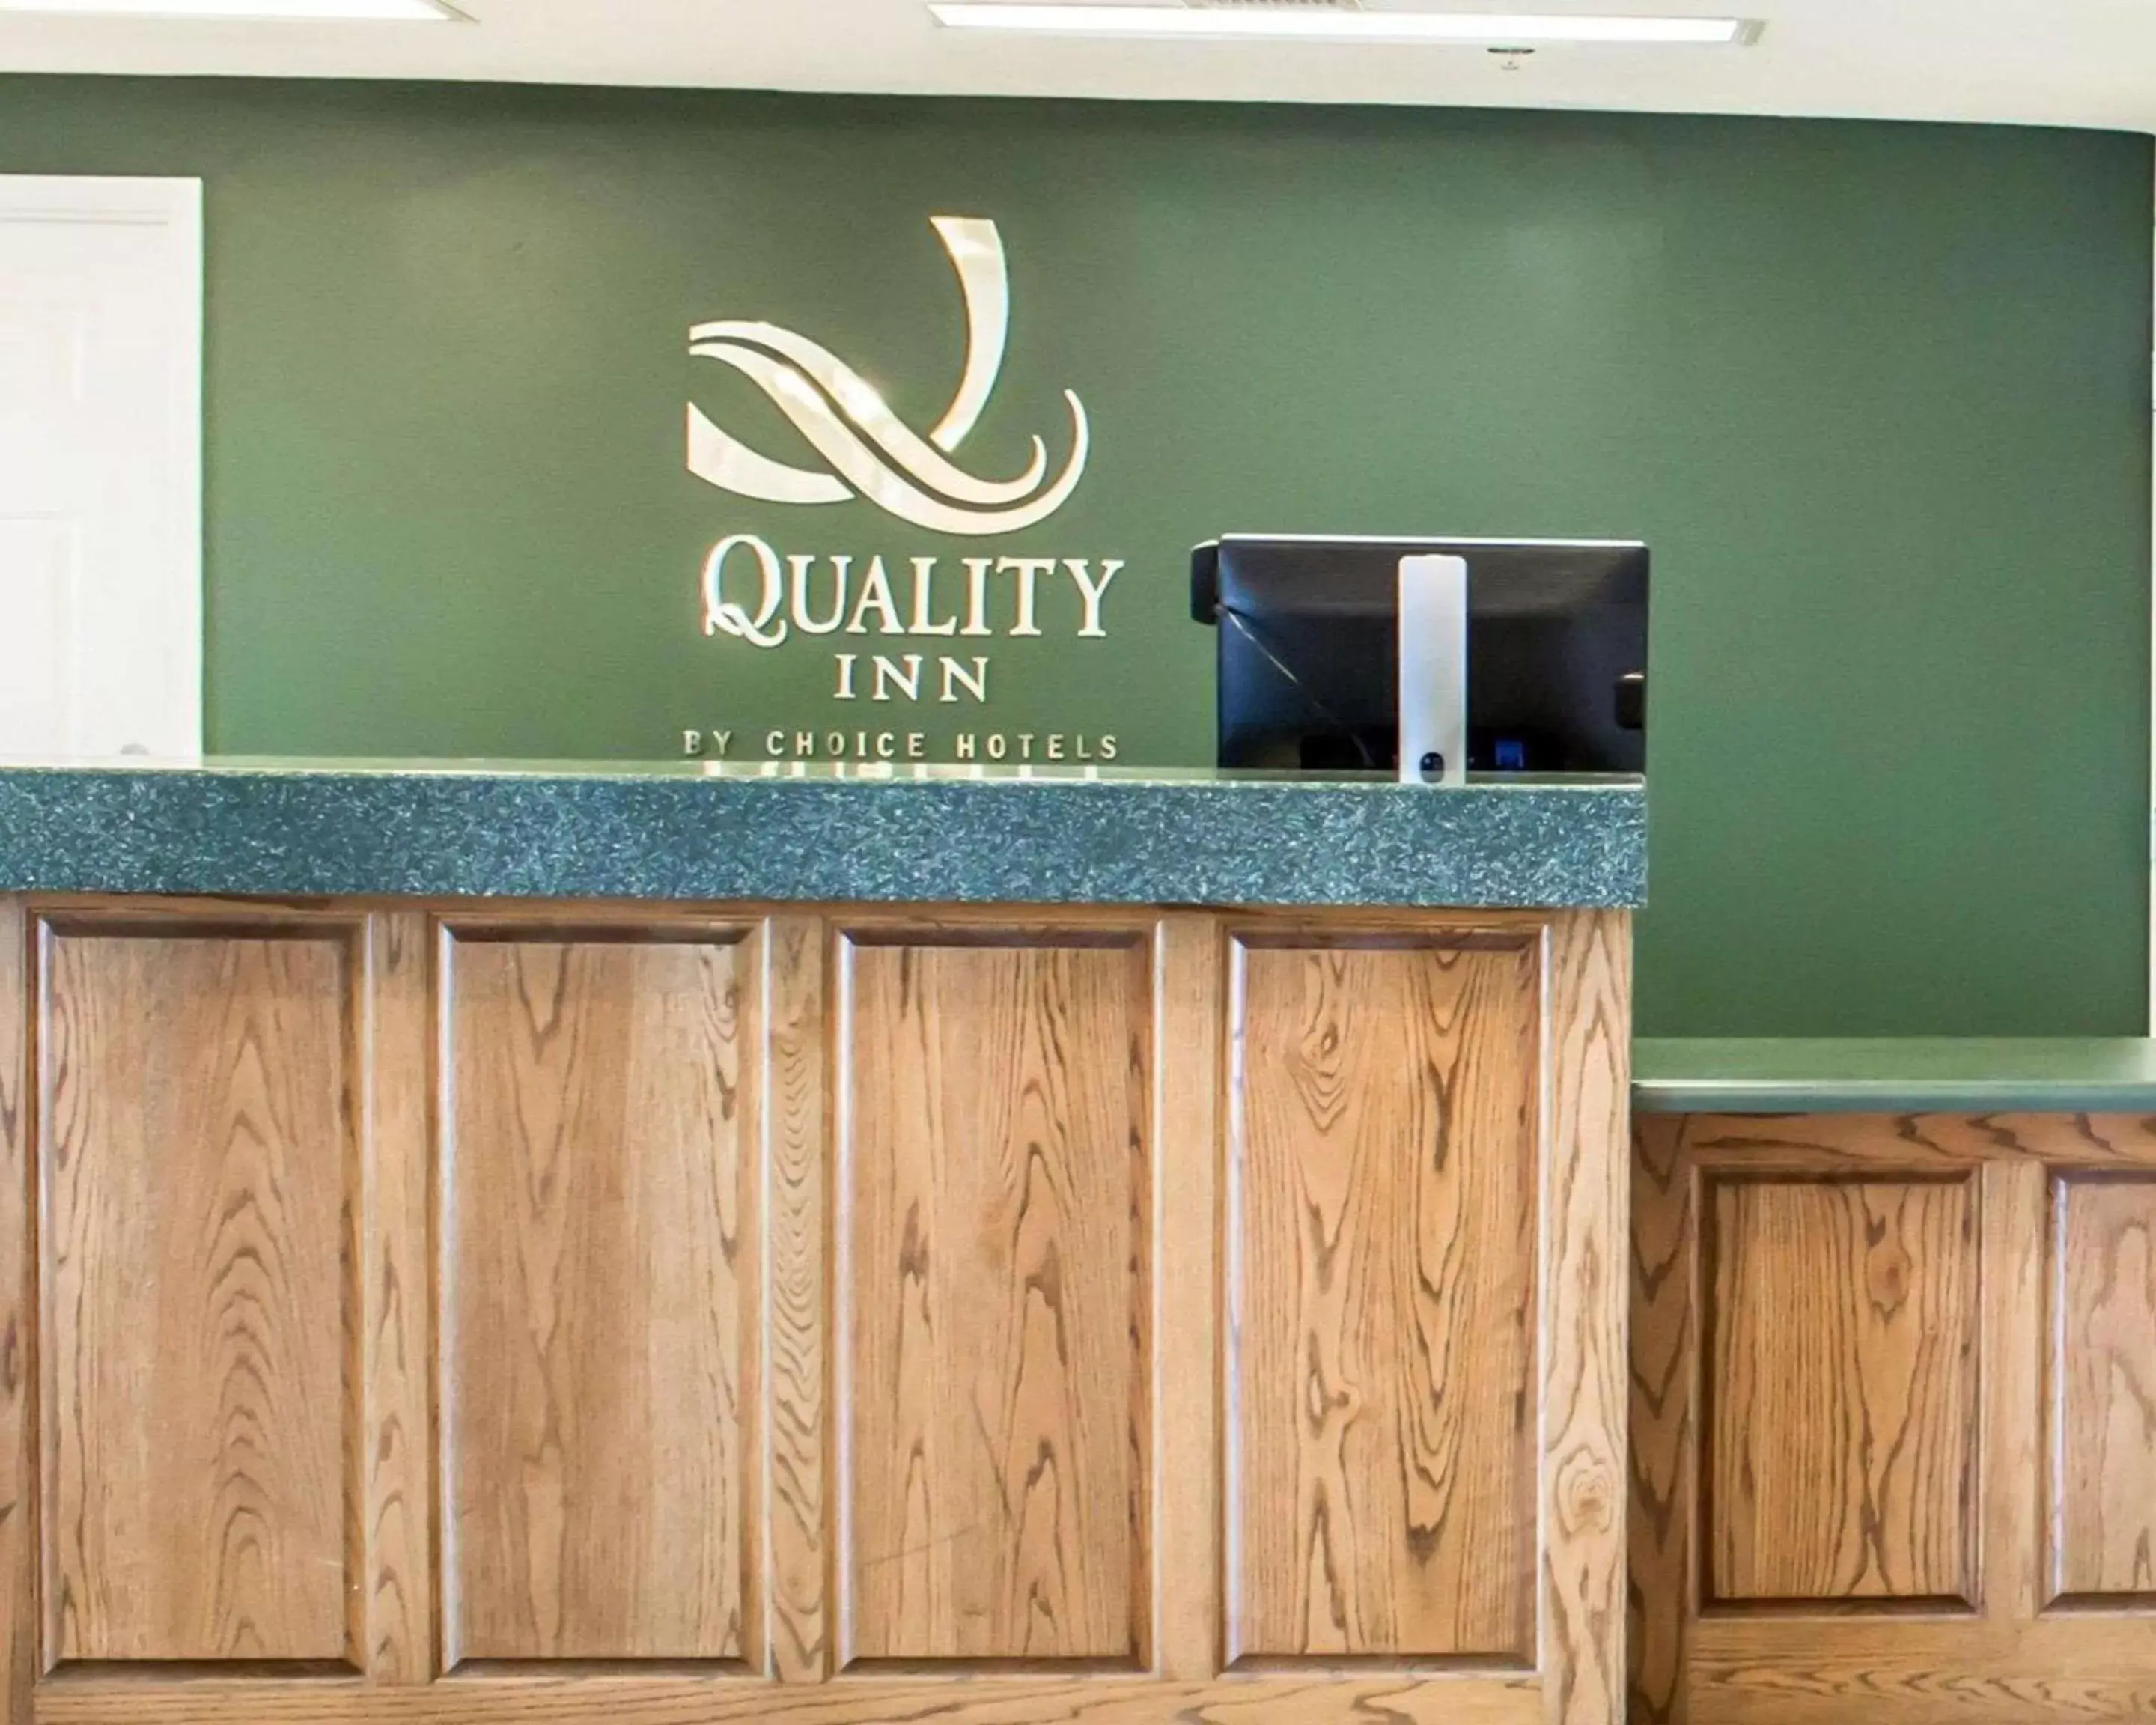 Lobby or reception, Lobby/Reception in Quality Inn near Seymour Johnson AFB